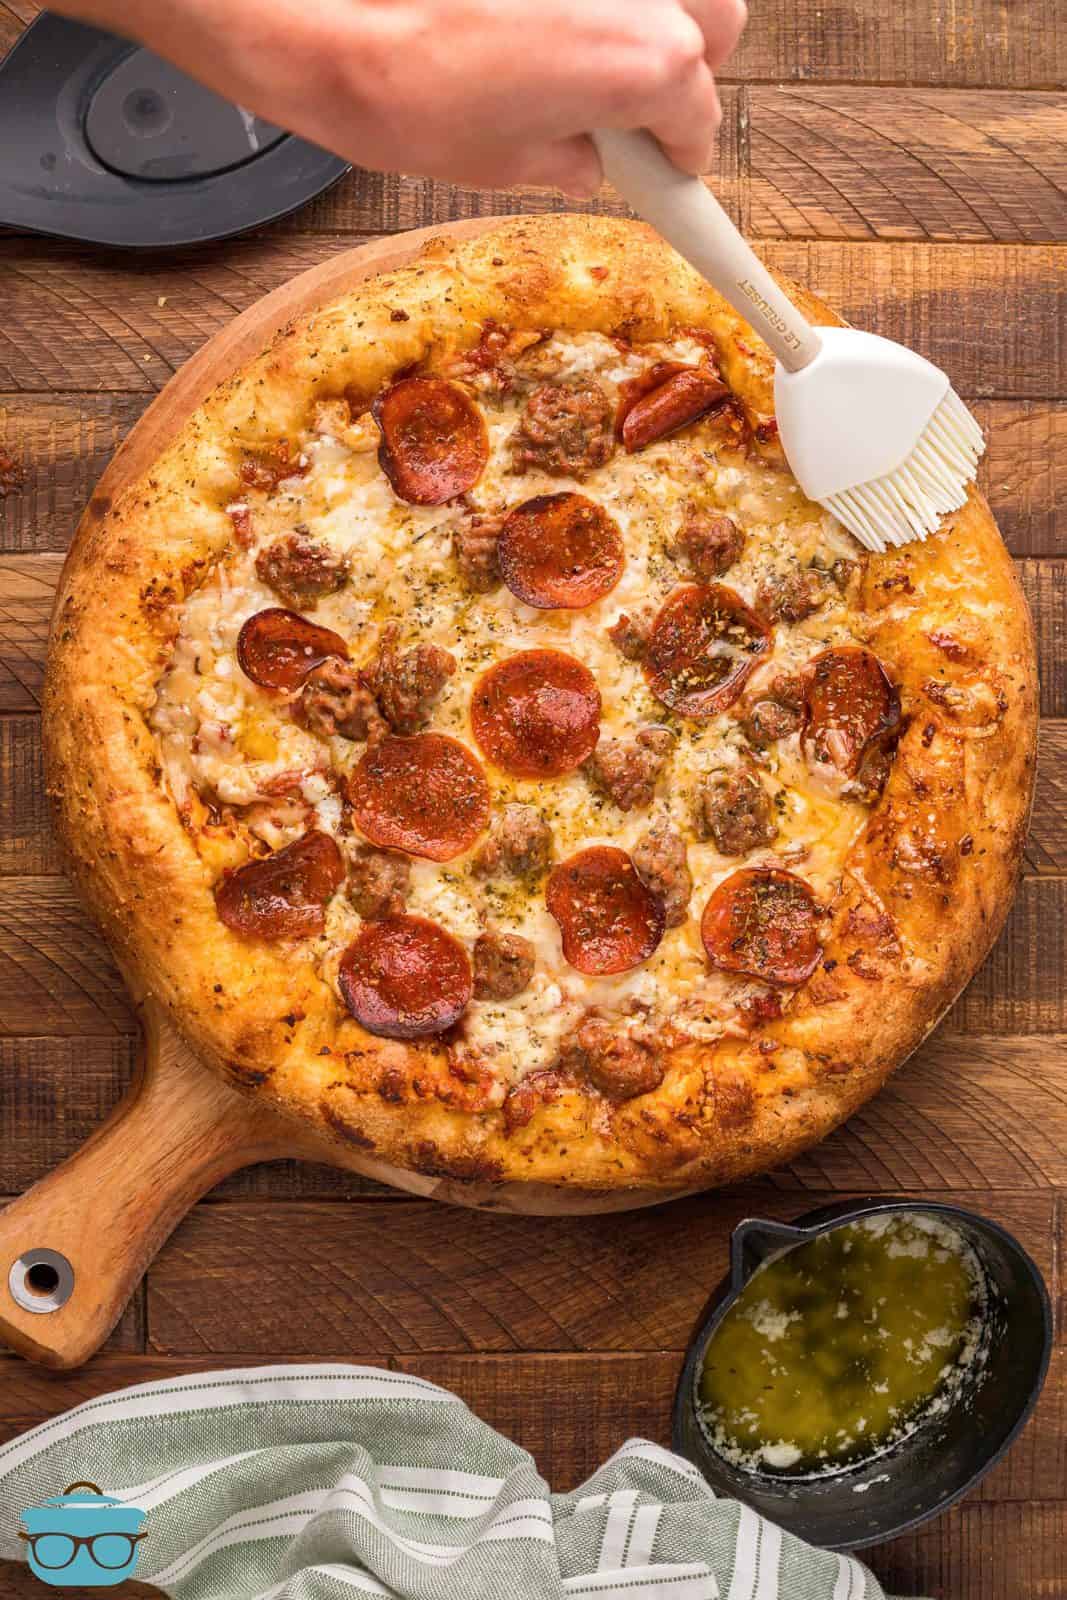 Spennellare a mano la miscela di burro intorno alla crosta della pizza ai peperoni affumicati.